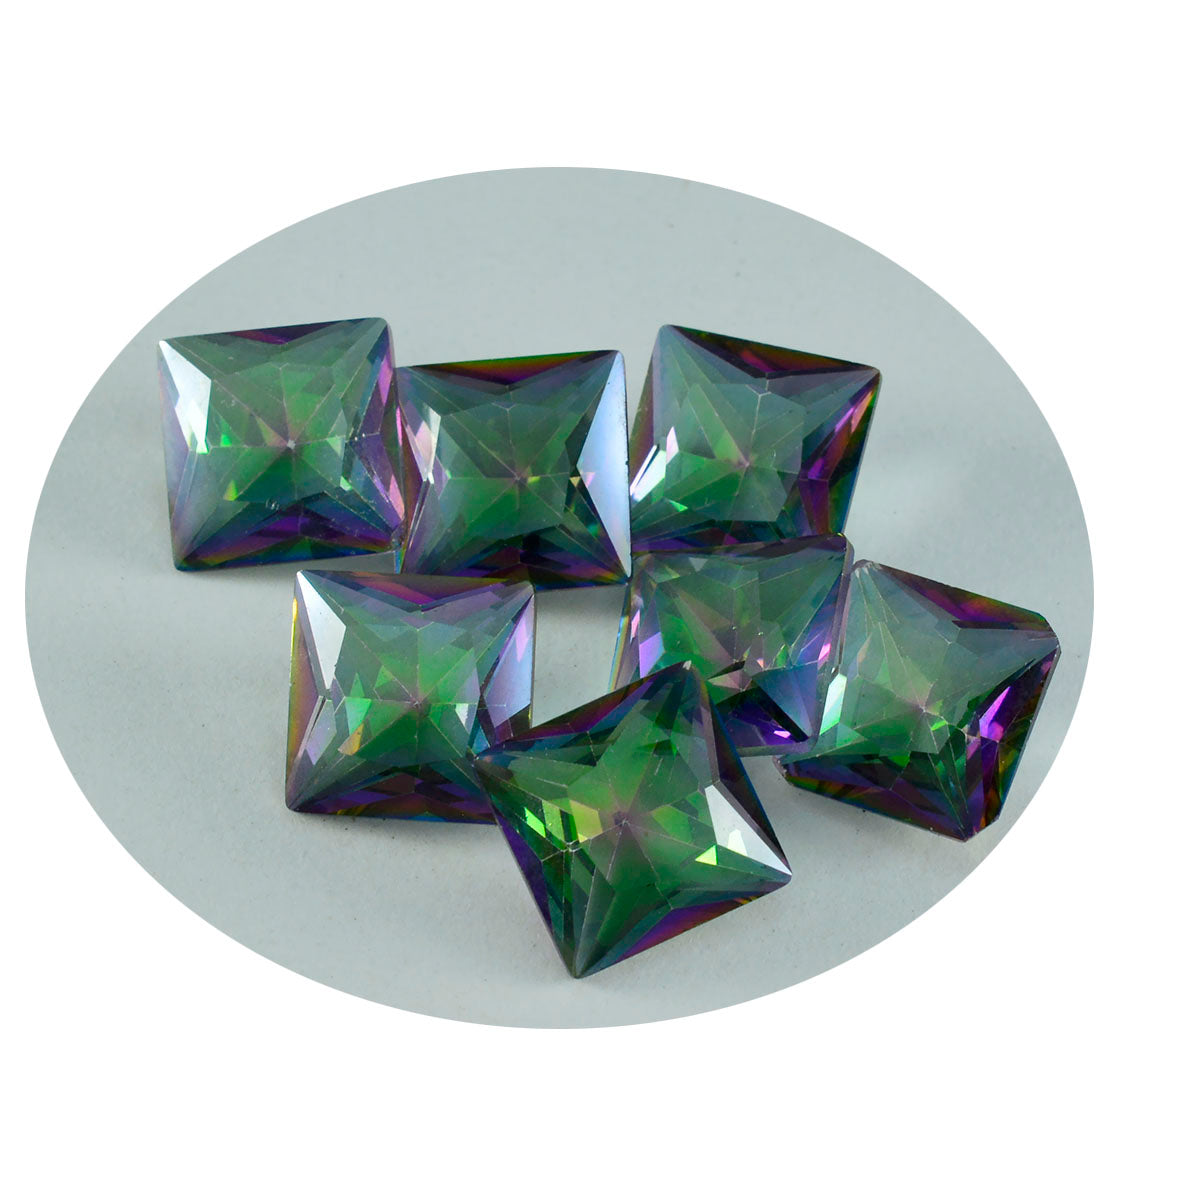 riyogems 1 шт. разноцветный мистический кварц граненый 15x15 мм квадратной формы прекрасное качество свободный камень